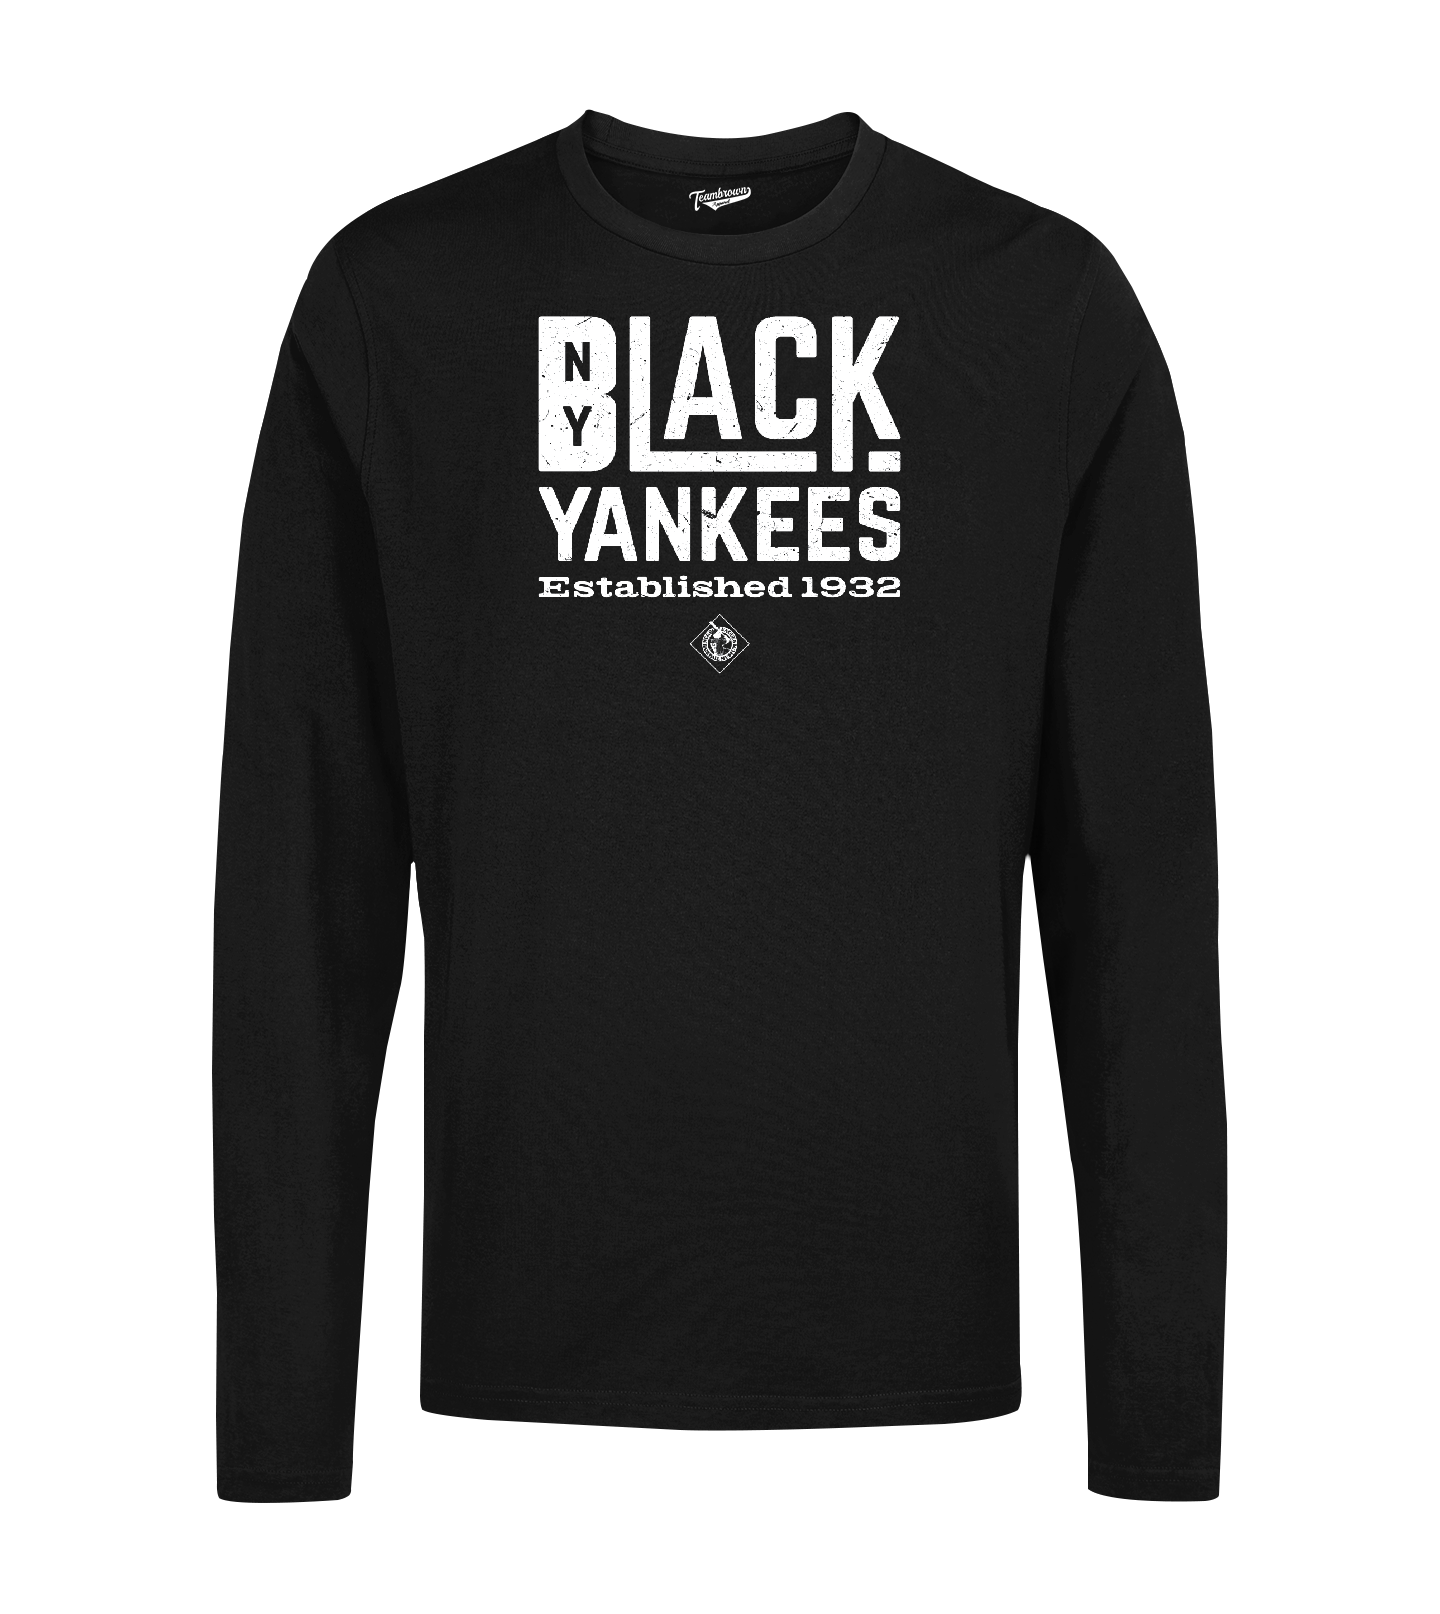 New York Black Yankees - Est 1932 - Long Sleeve